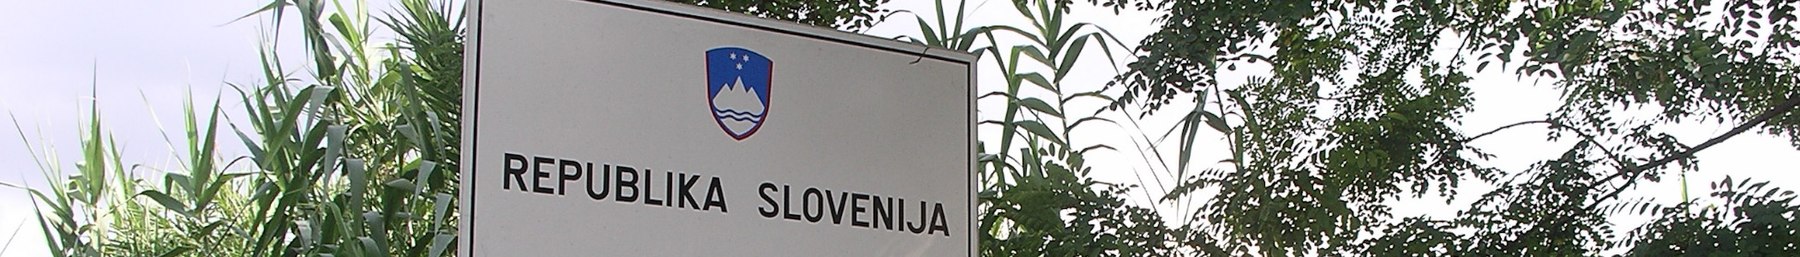 WV banner Slovenian phrasebook.jpg